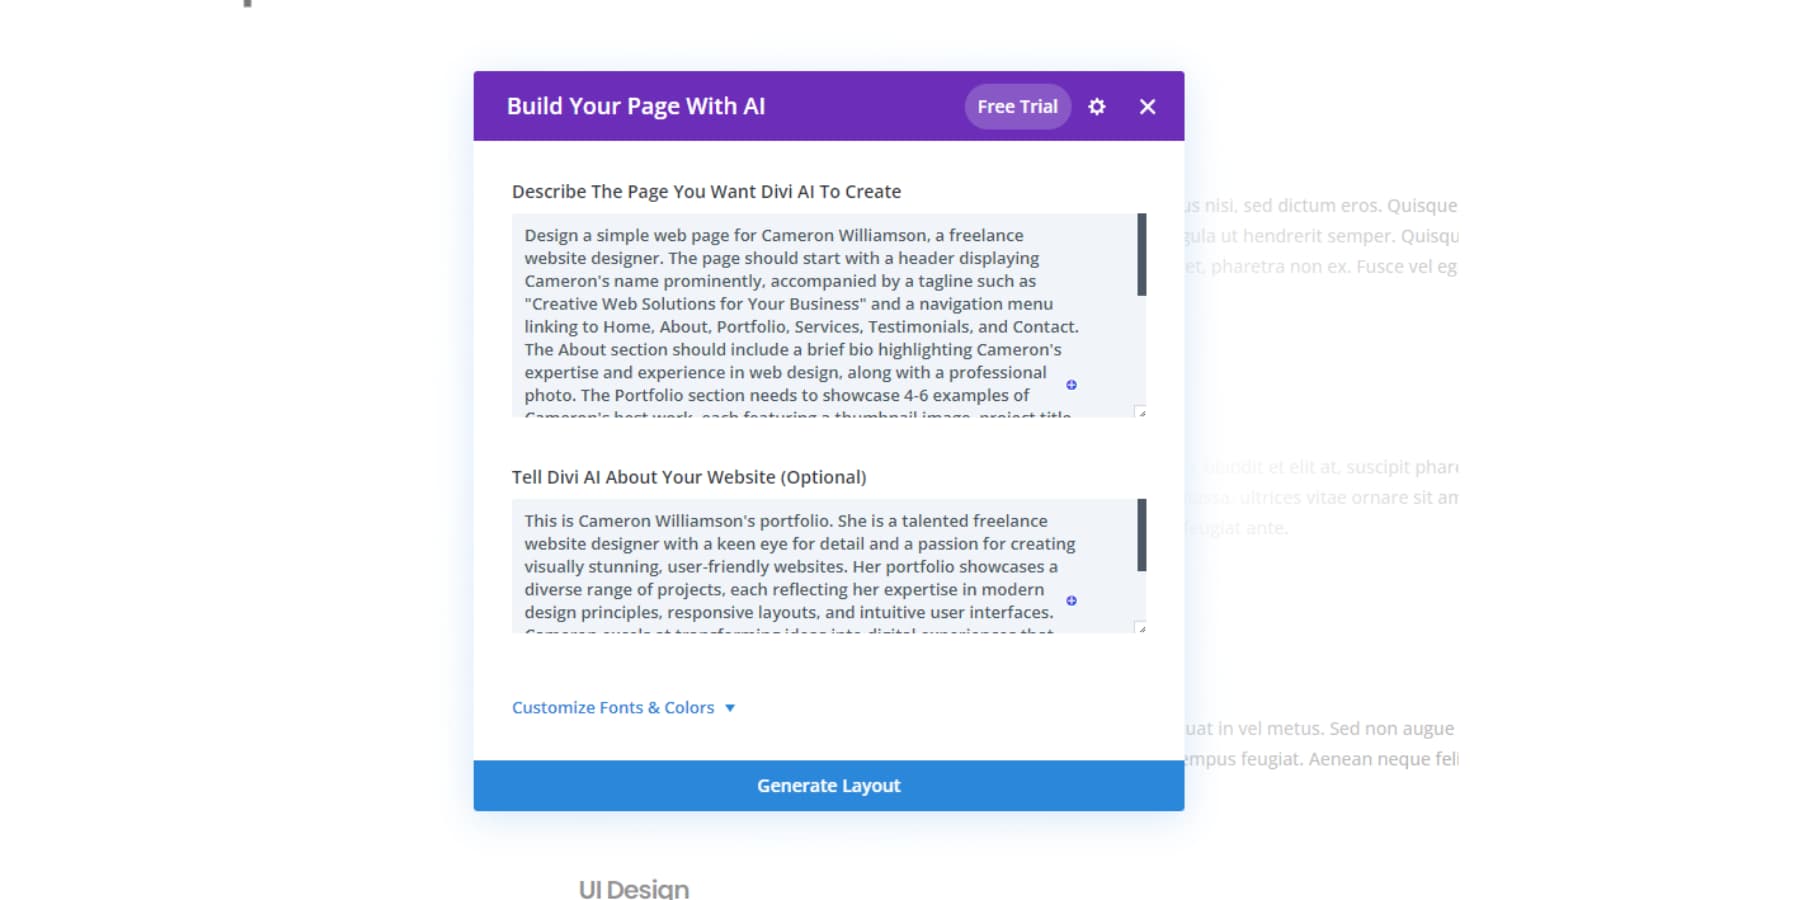 A screenshot of Divi's AI options to build a website